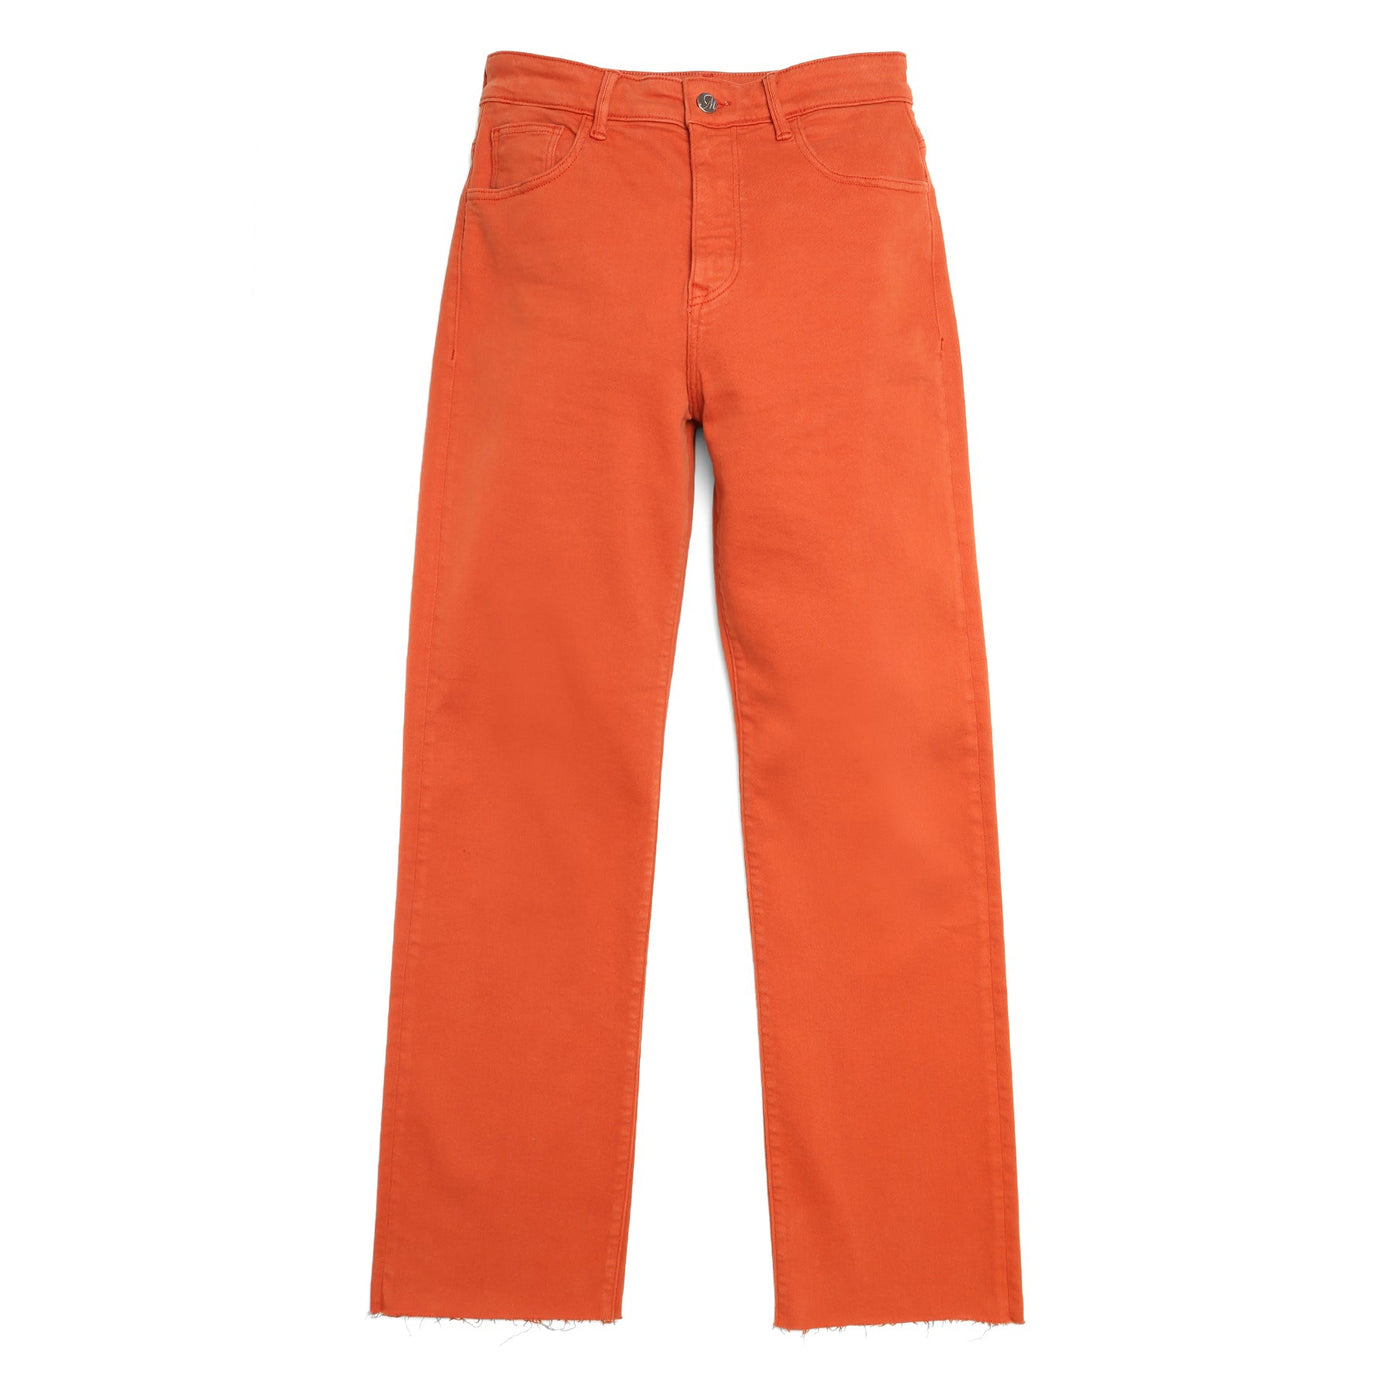 Mavi Barcelona High Rise Wide Leg Jean-Women's Clothing-Orange-25-Kevin's Fine Outdoor Gear & Apparel